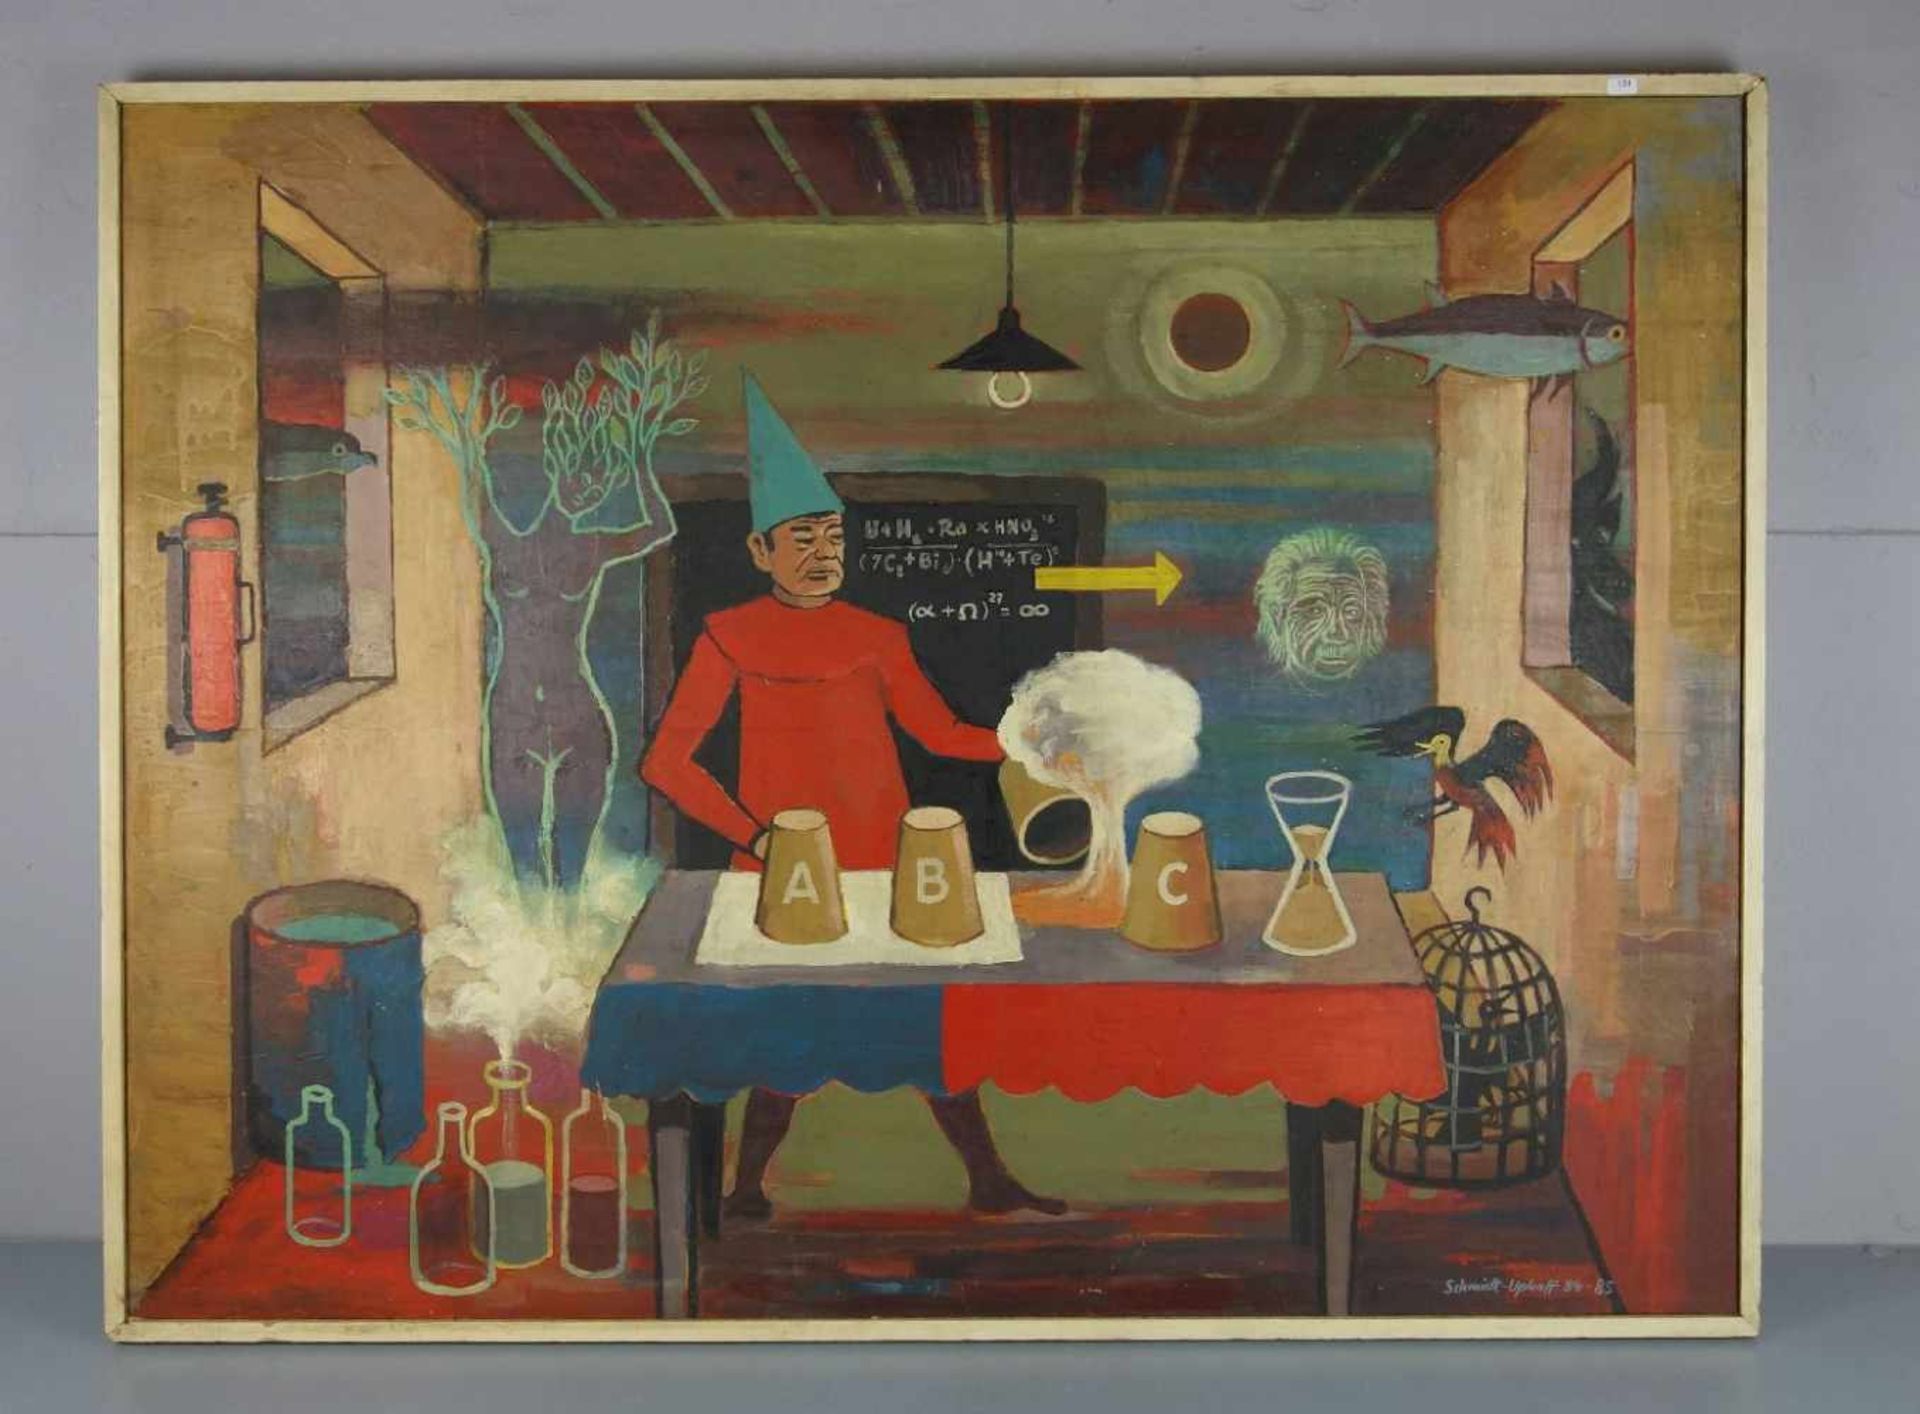 SCHMIDT-UPHOFF, HANS ERICH (Neumark 1911-2002 Dessau), Gemälde / painting: "Zauberlehrling - auf